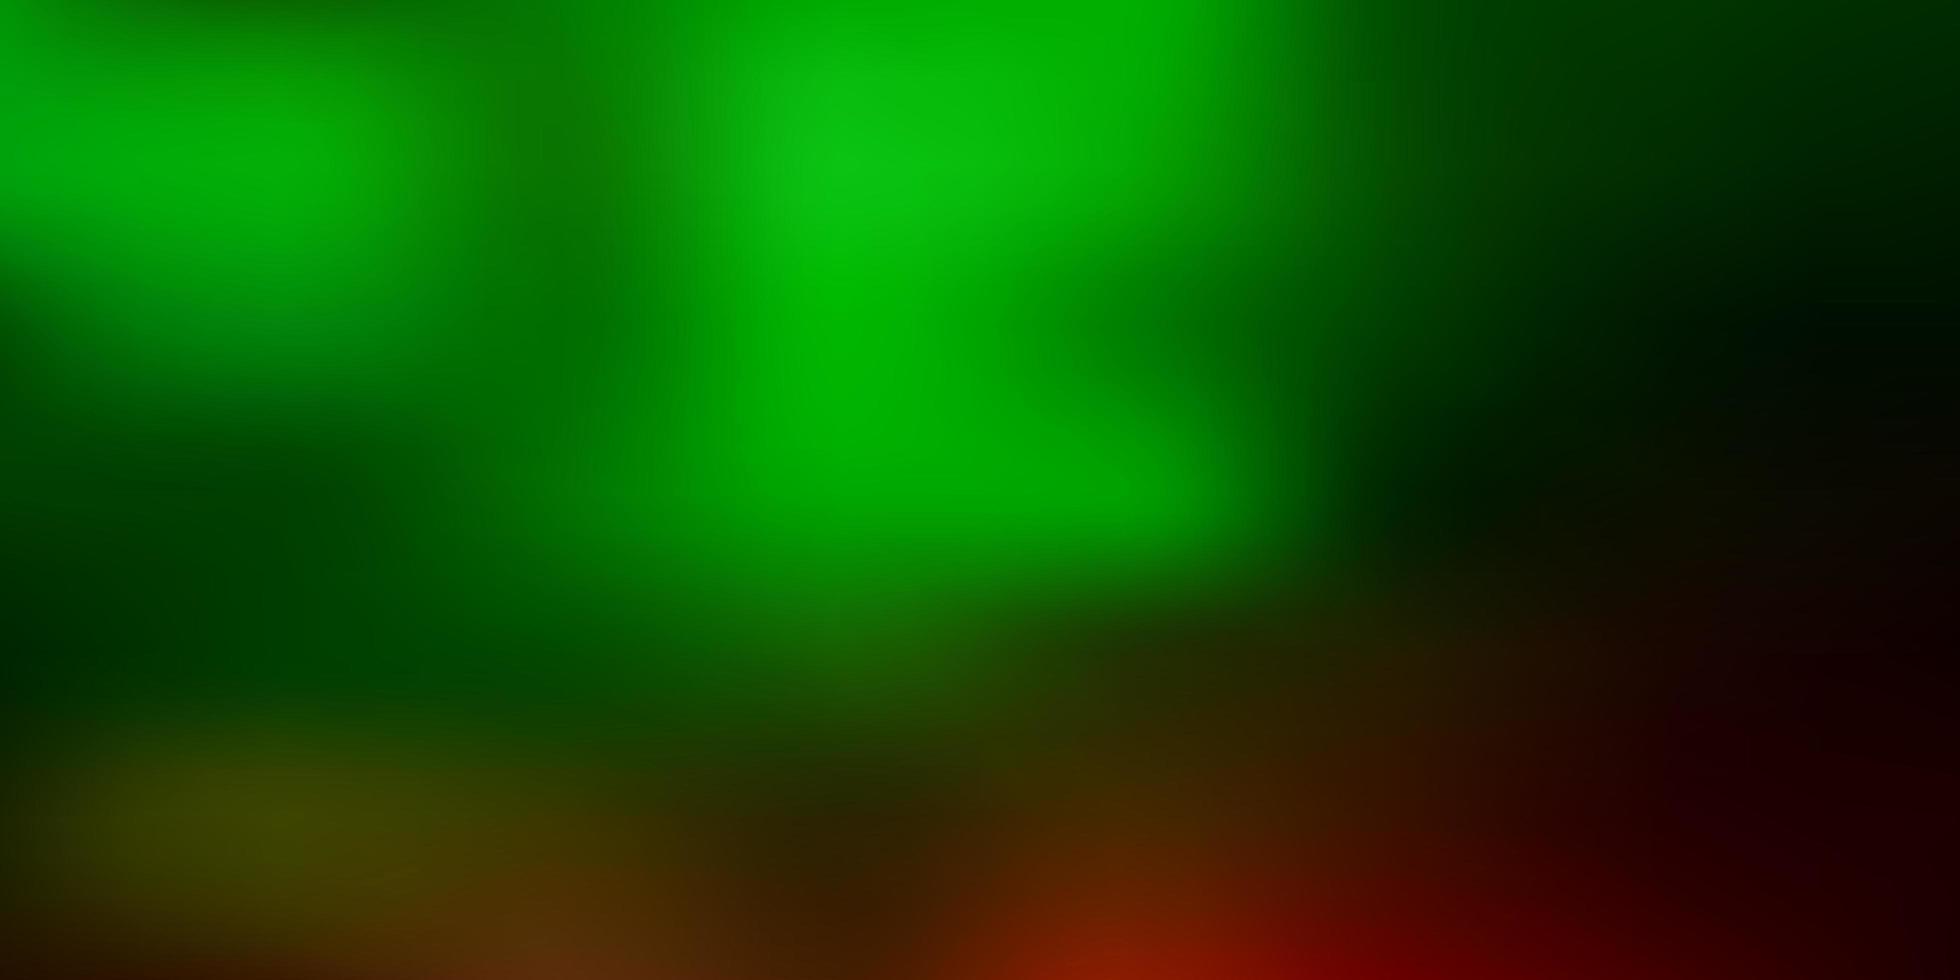 ljusgrön, röd gradient oskärpa konsistens. vektor